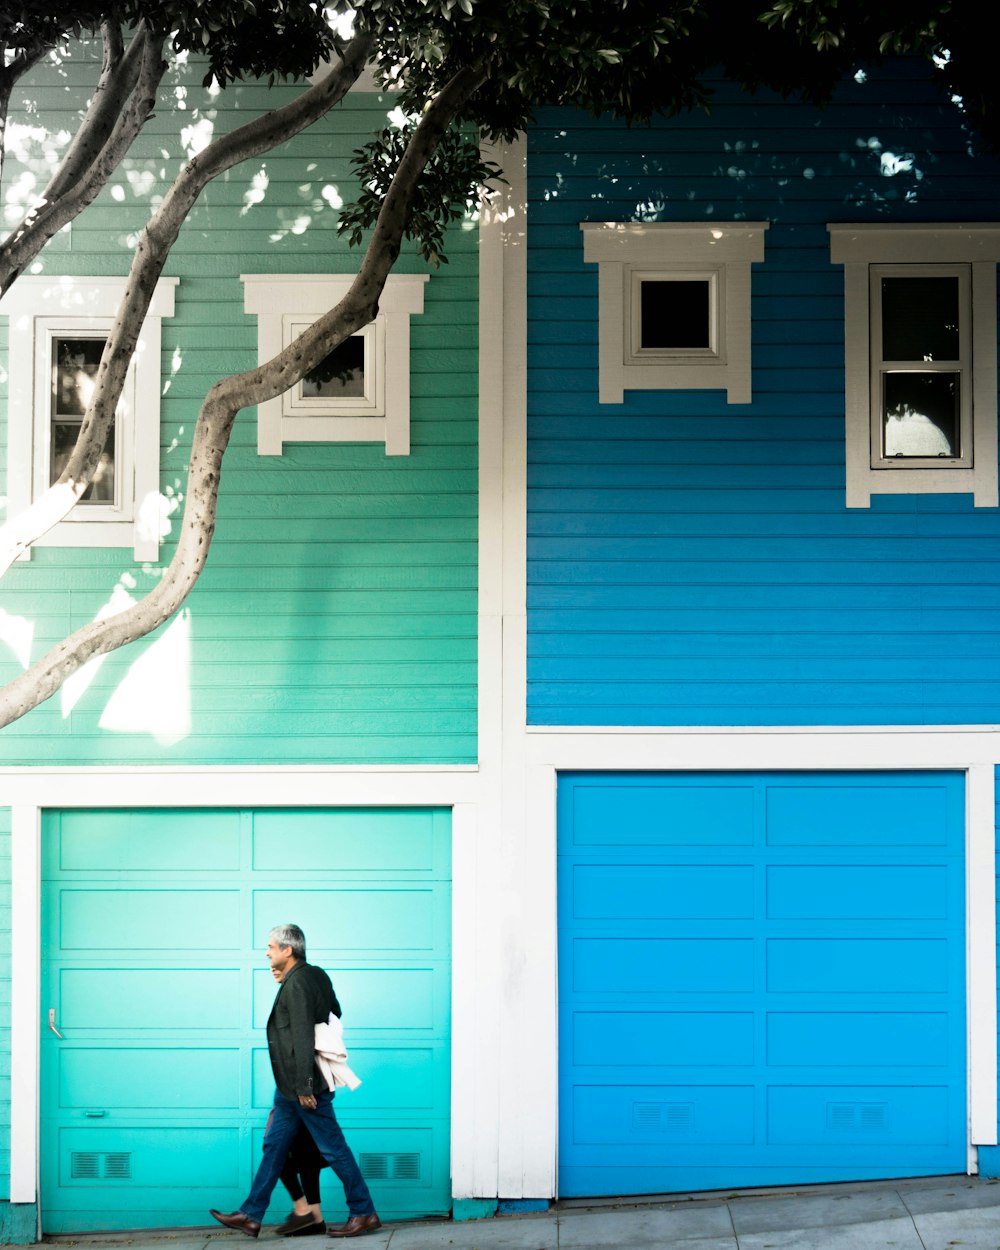 Hombre con chaqueta caminando al lado de la casa azul